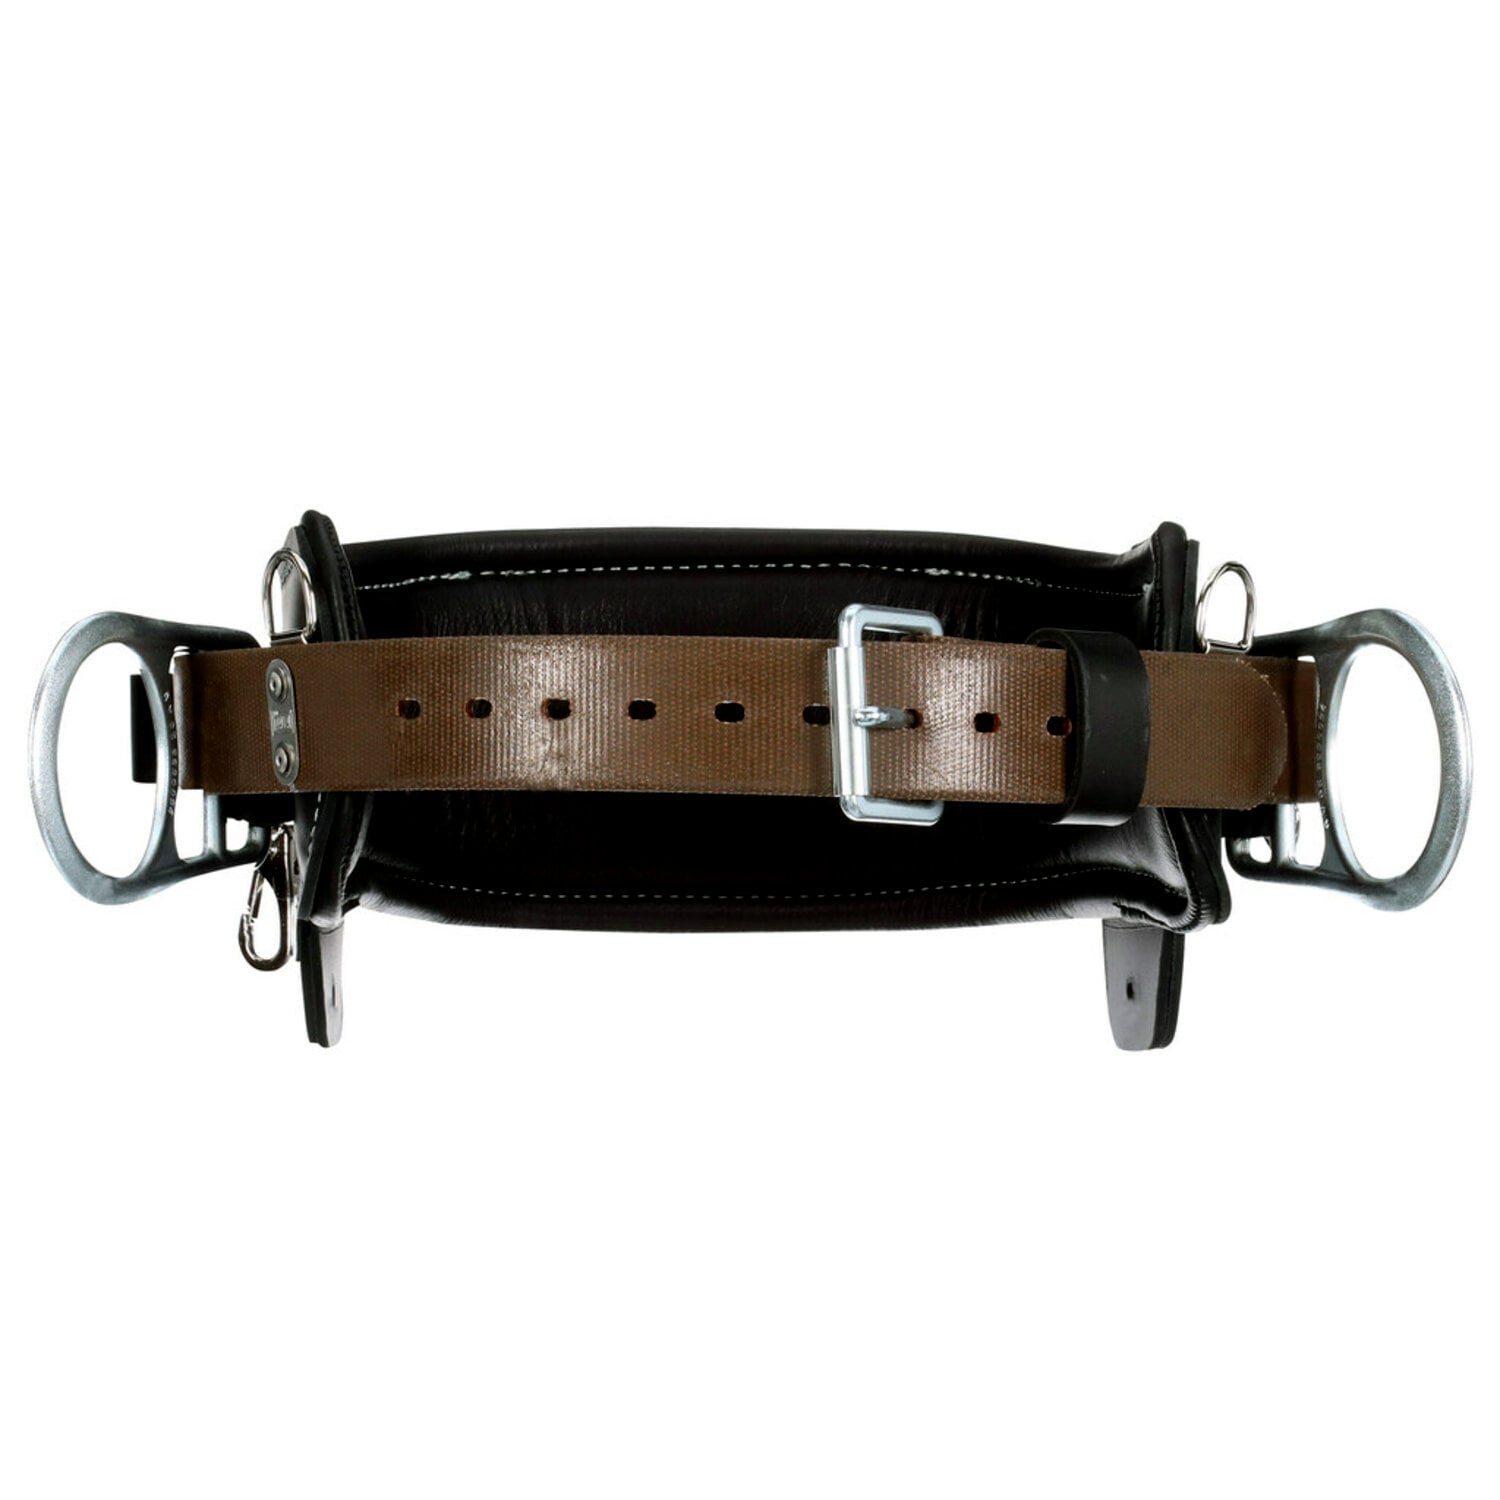 7012815139 - 3M DBI-SALA 2D Lineman Tongue Buckle Positioning Belt 1003245, Leather, Black, D23